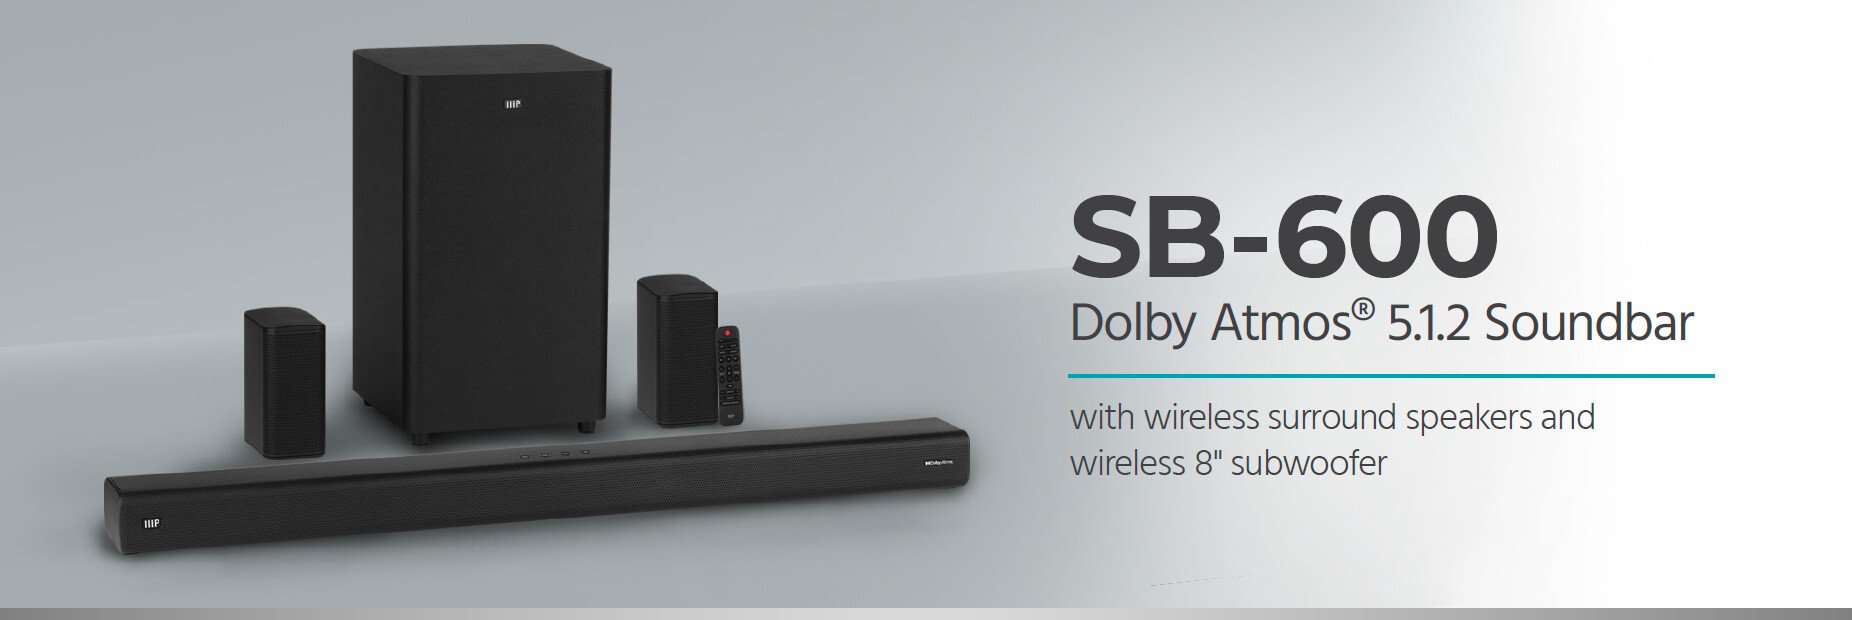 Monoprice SB-600 Dolby Atmos 5.1.2 Soundbar with Wireless 